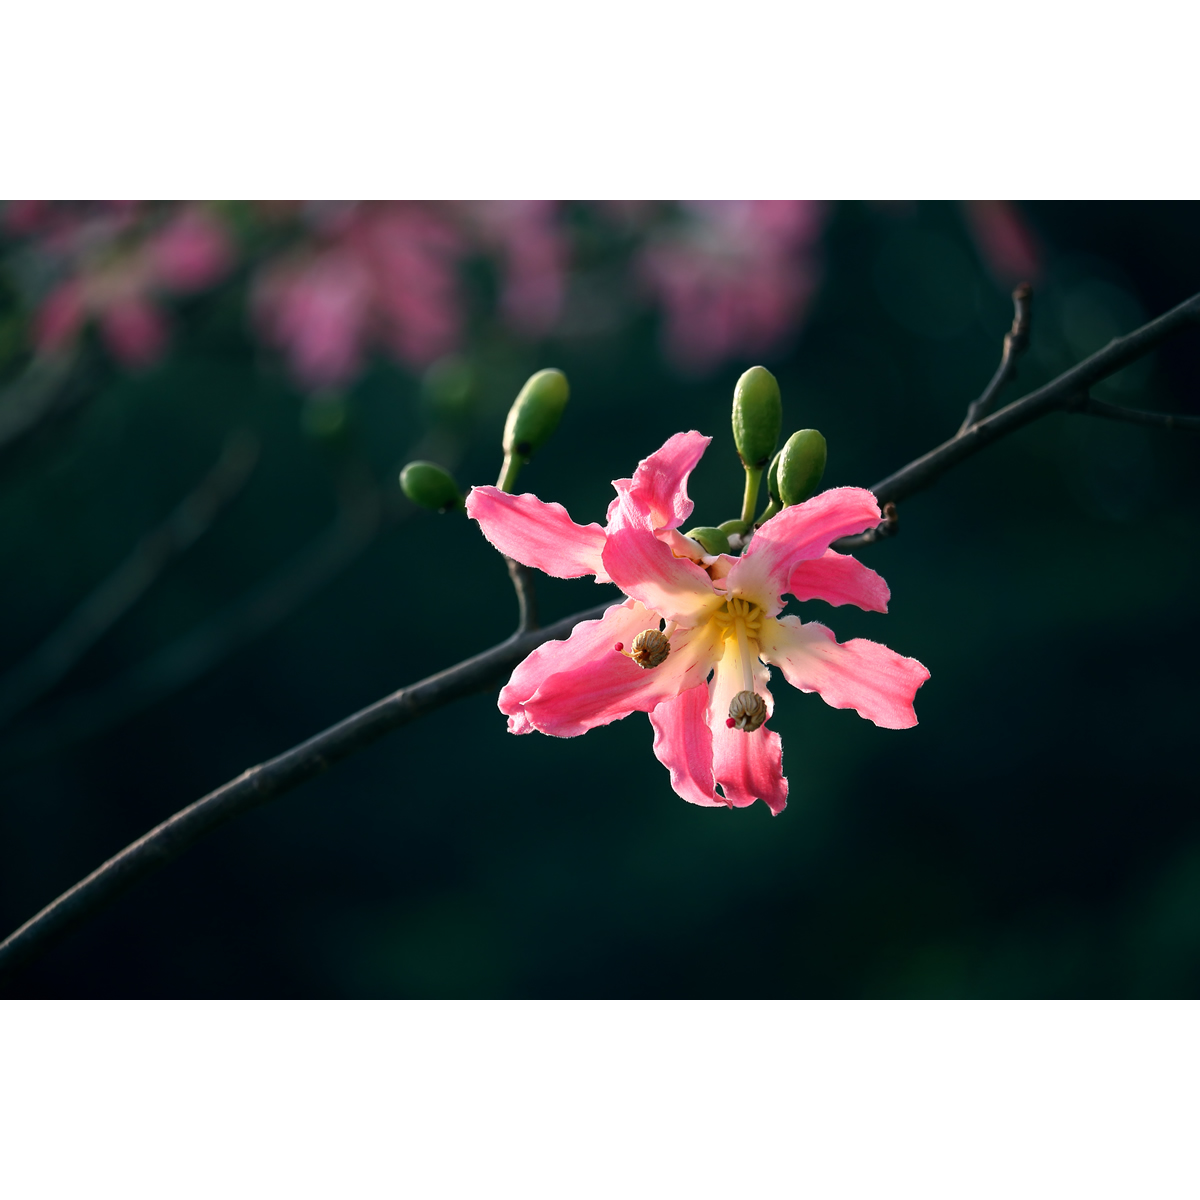 原创高清花卉摄影作品-美丽异木棉花(1张) 高分辨率壁纸图片素材